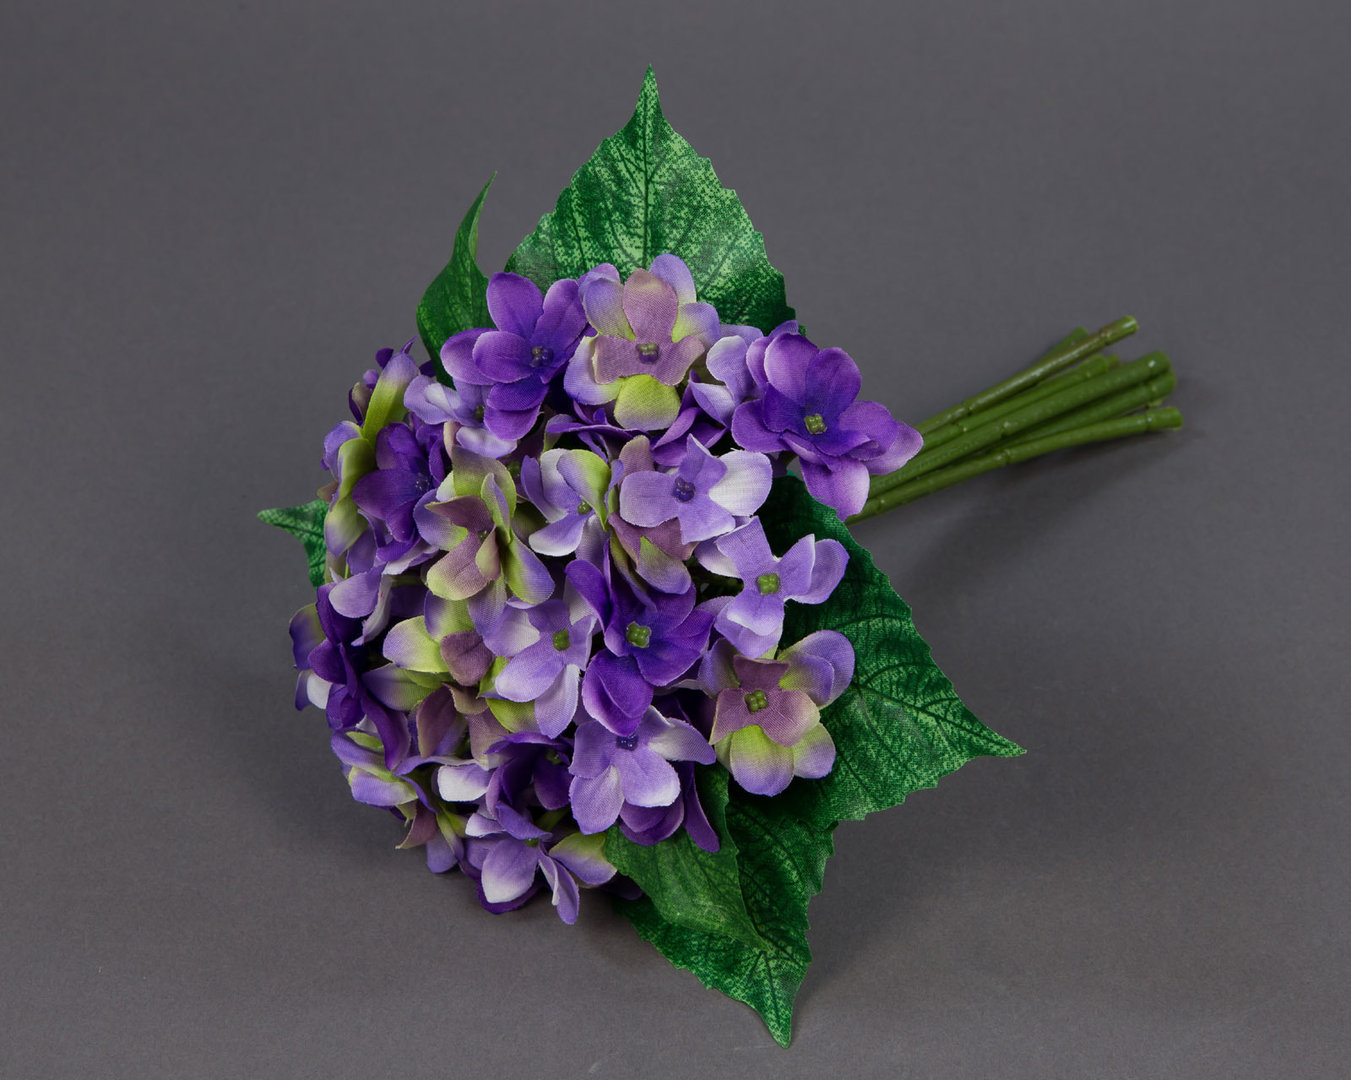 Hortensienstrauß / Hortensienbouquet 24cm lila PF Kunstblumen künstlicher Strauß Seidenblumen